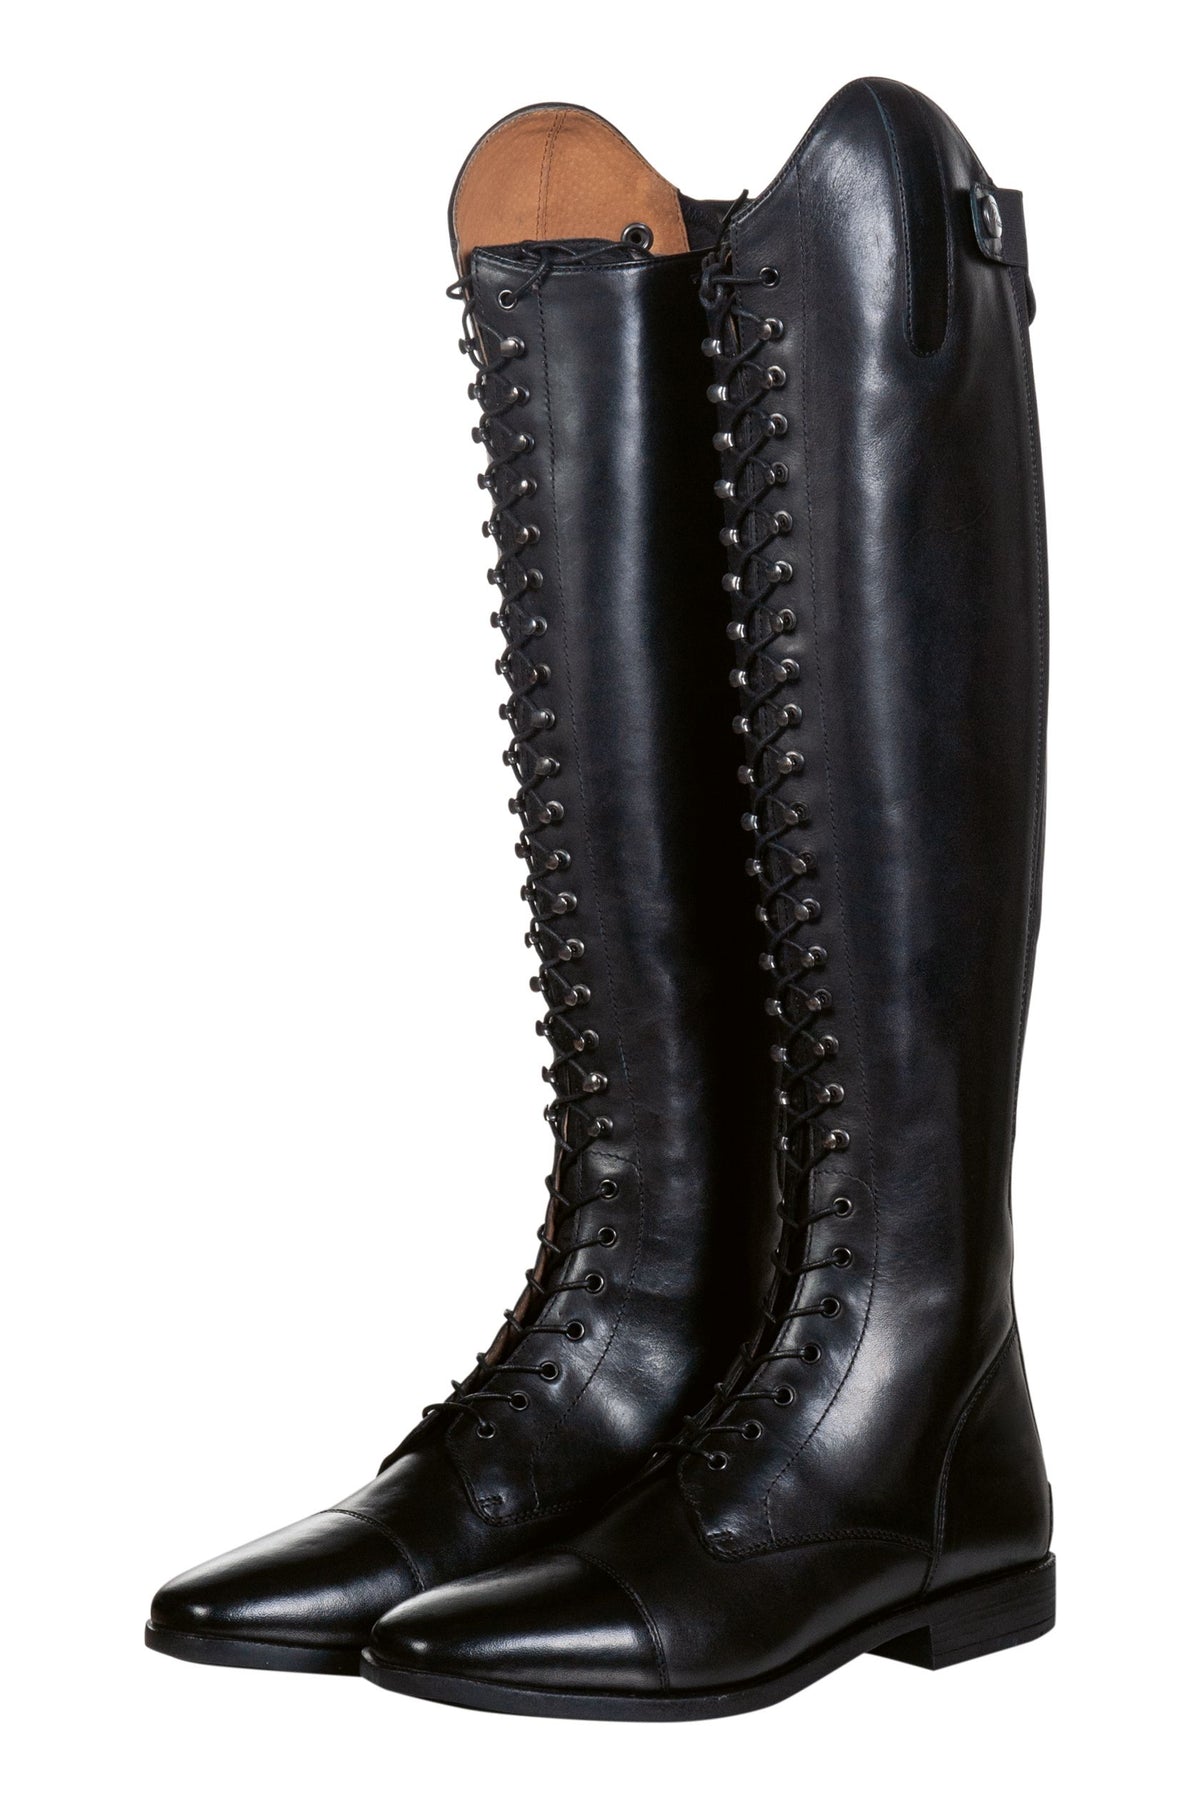 Tall Boots Australia – Urban Horsewear